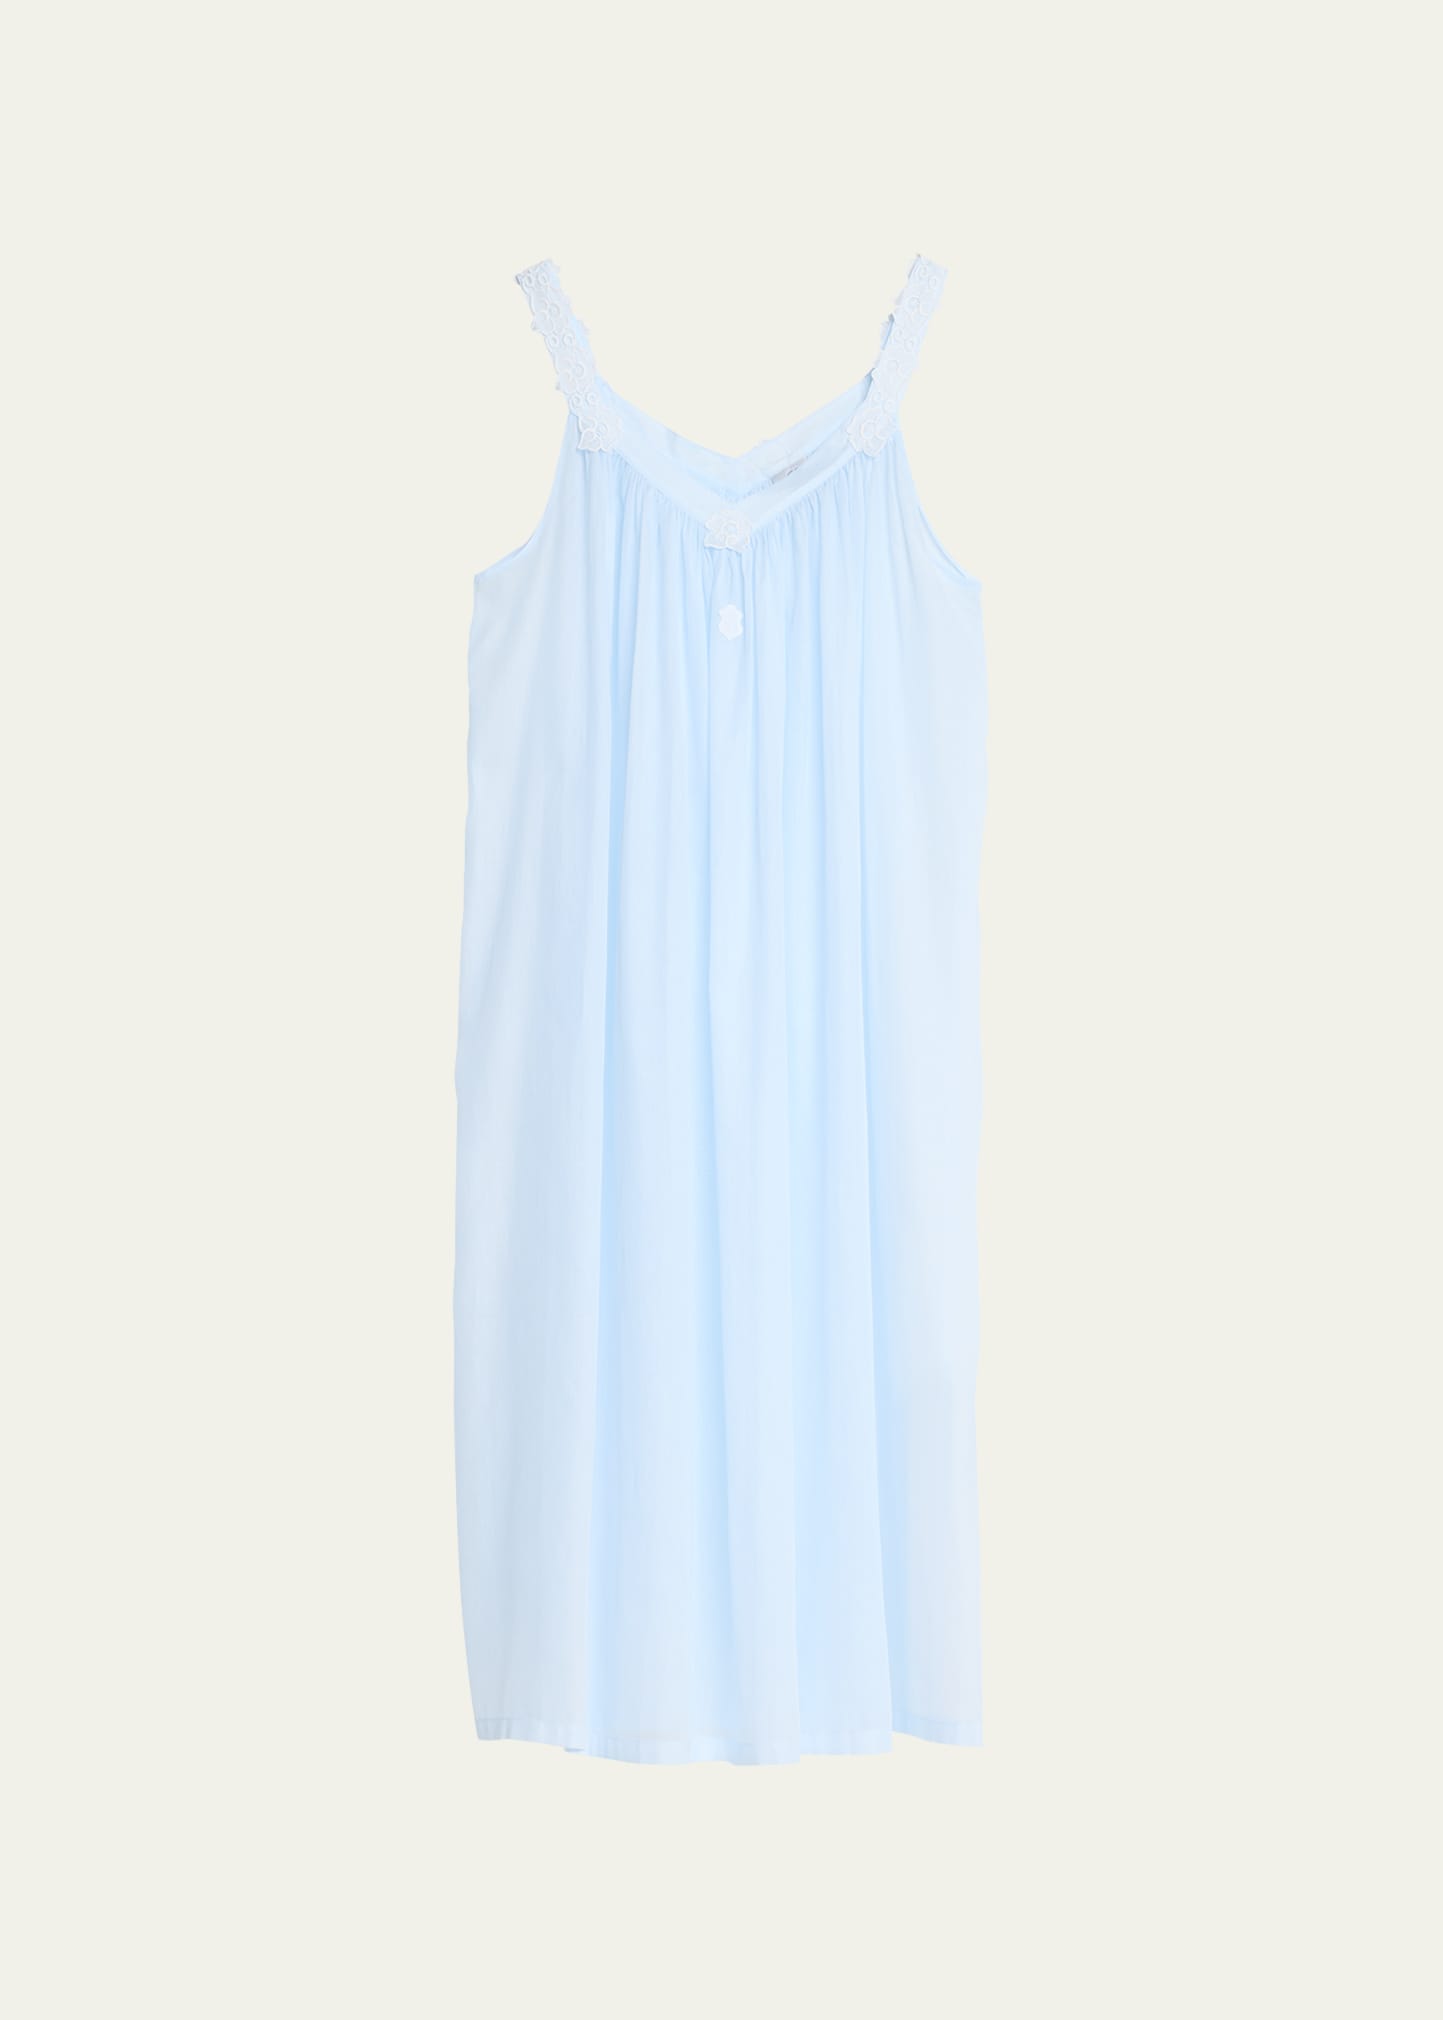 Celestine Kiana 1 Sleeveless Floral Applique Nightgown